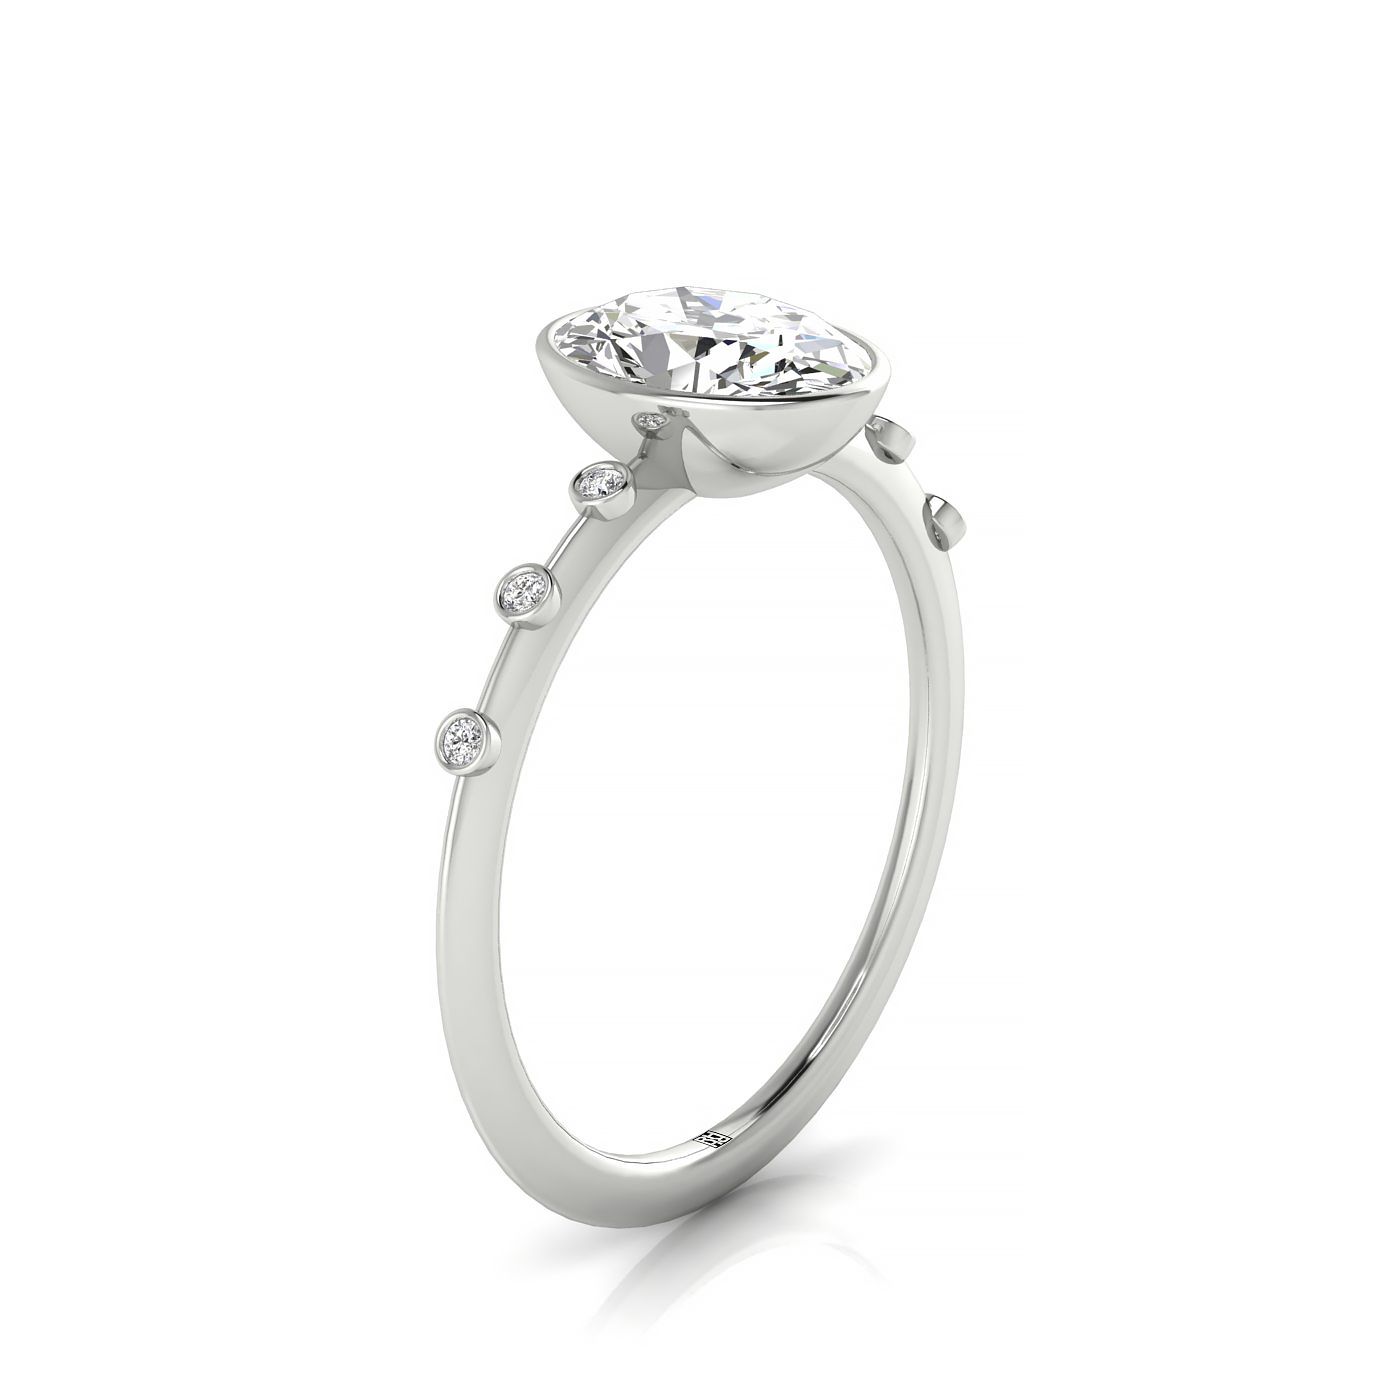 18kw Bezel Set Oval Engagement Ring With 6 Bezel Set Round Diamonds On Shank